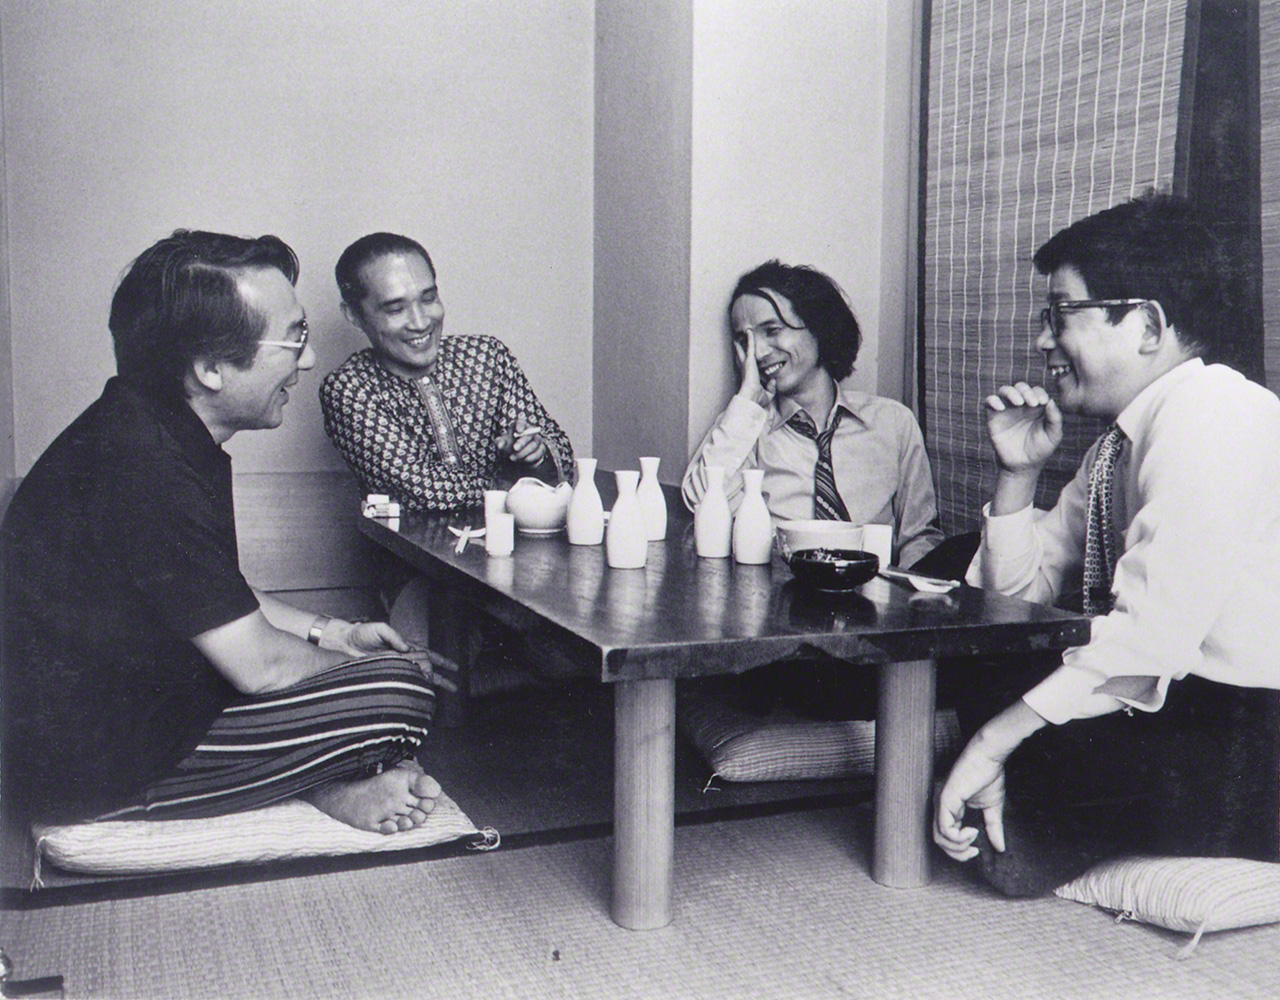 De gauche à droite, le compositeur Yuasa Jôji, le poète Tanikawa Shuntarô, Takemitsu Tôru et l'écrivain Ôe Kenzaburô partagent un moment de détente dans les années 1970.